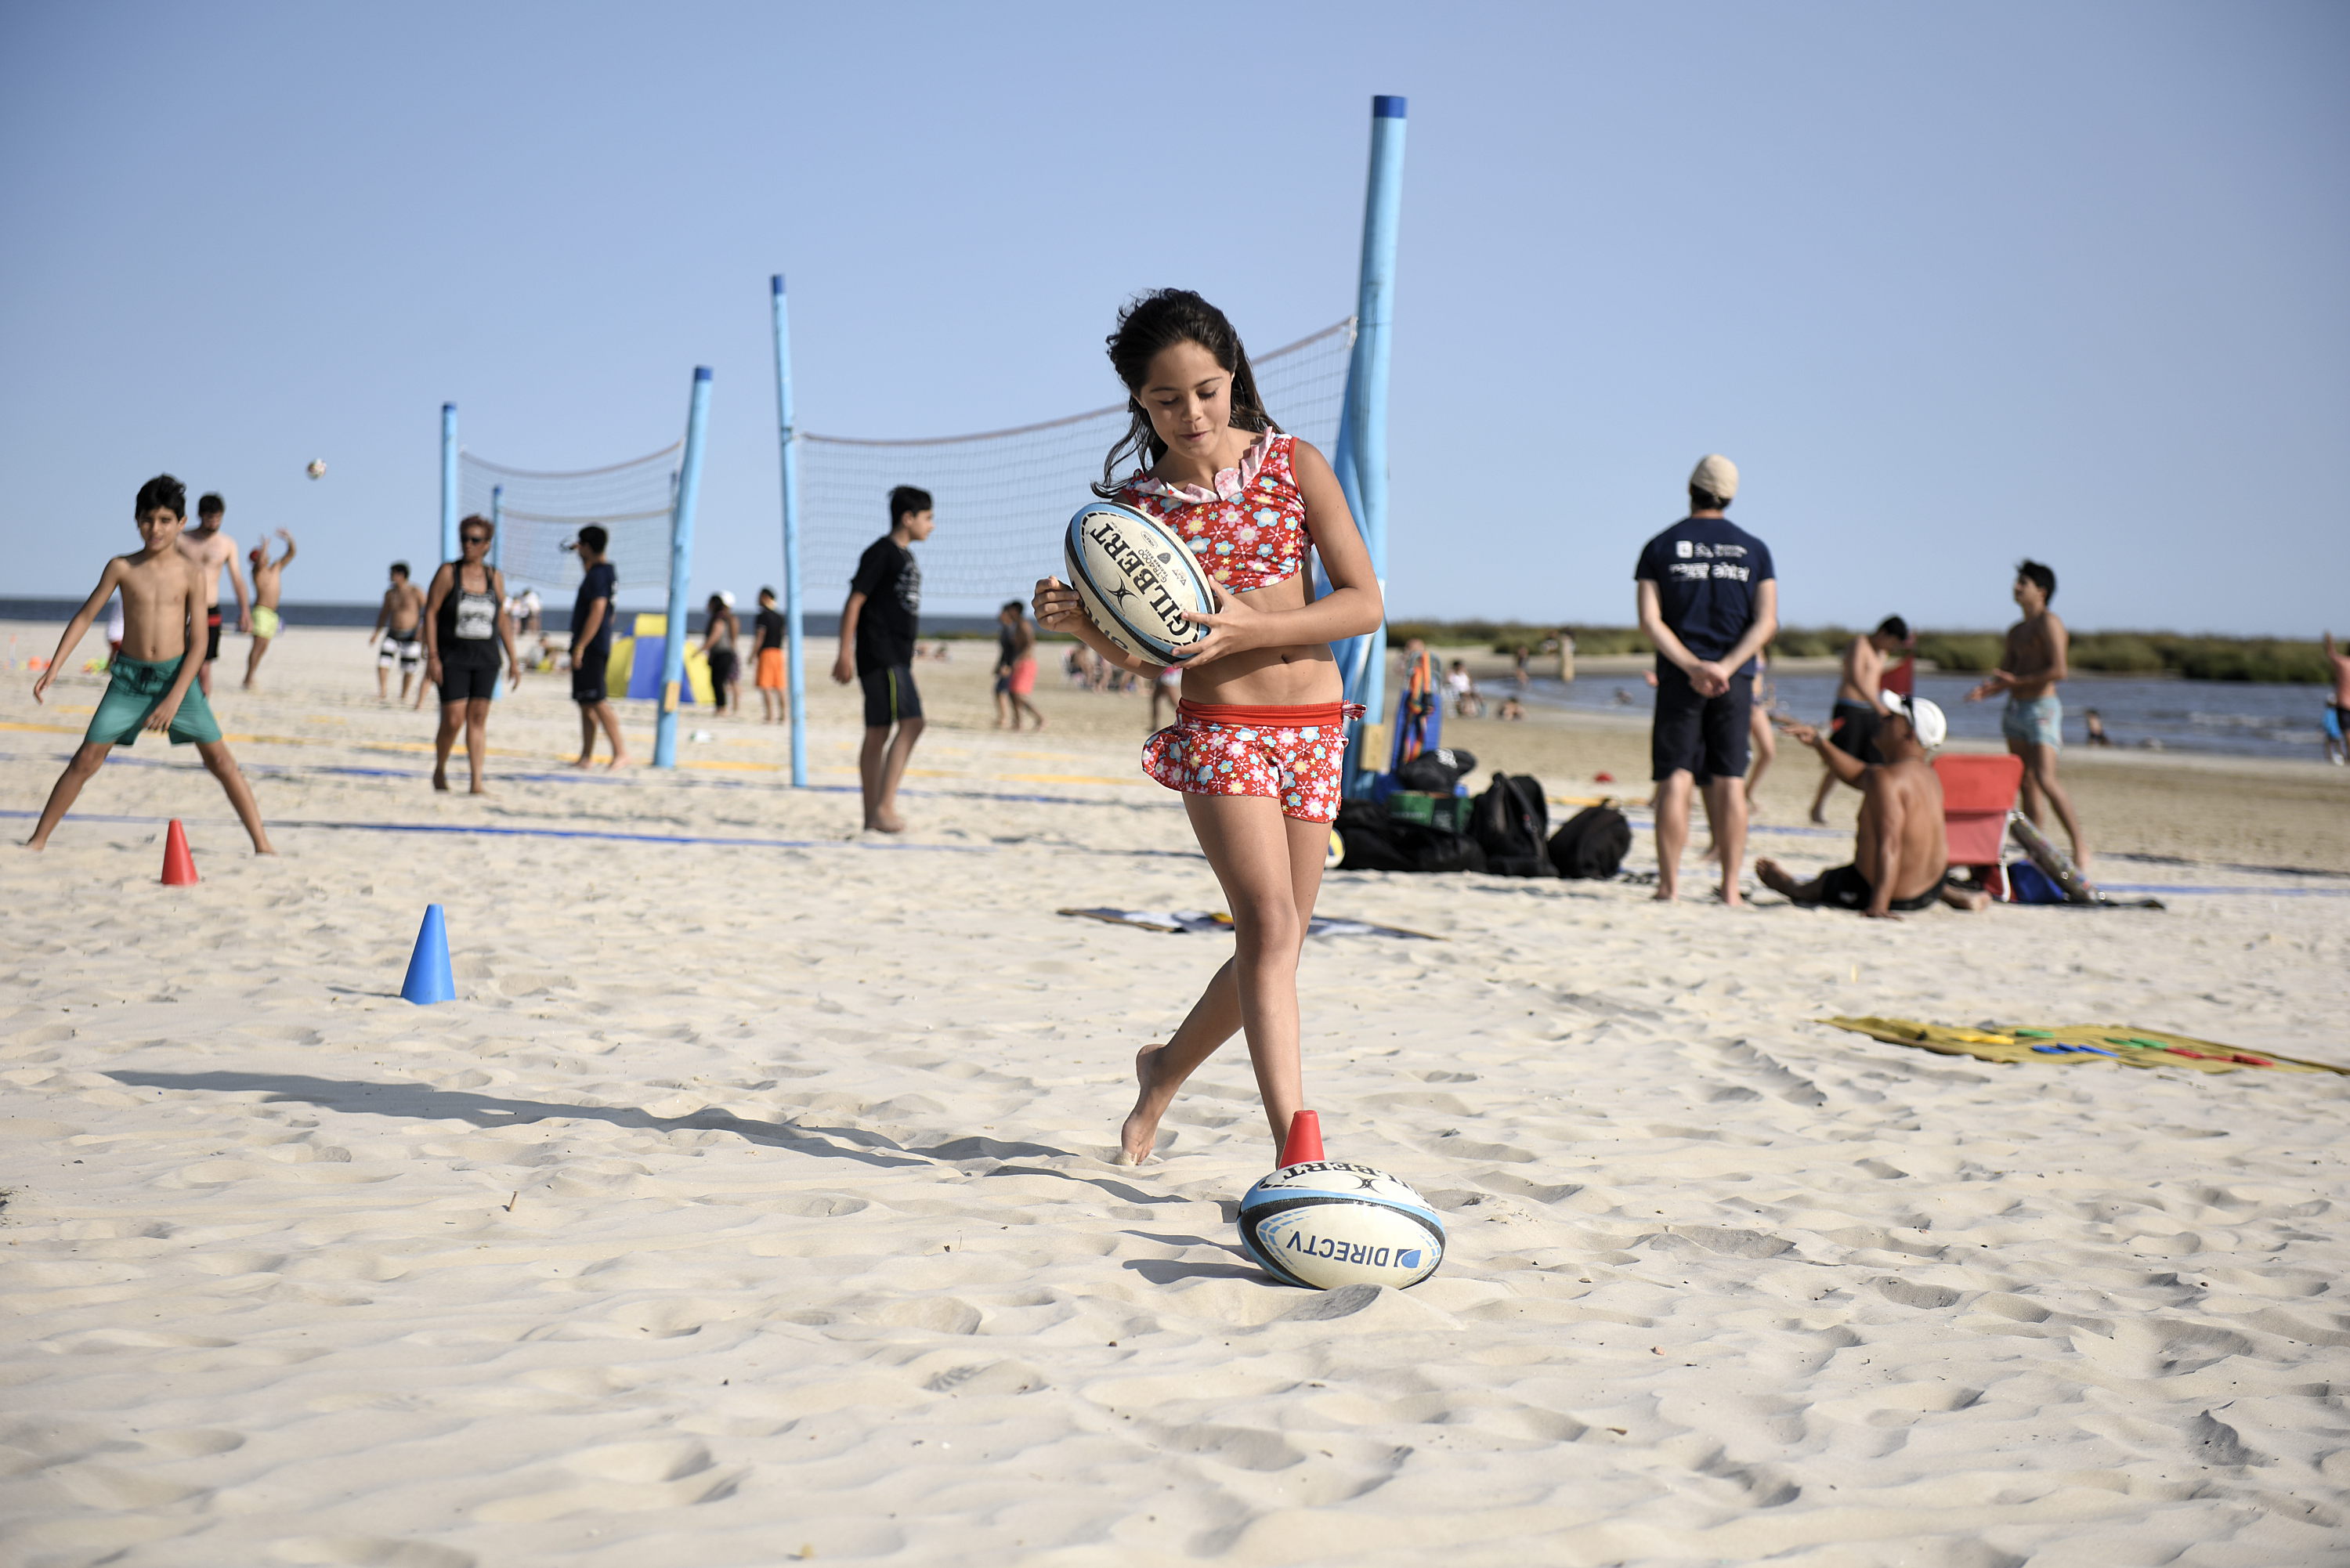 Actividades deportivas en la Playa Malvin